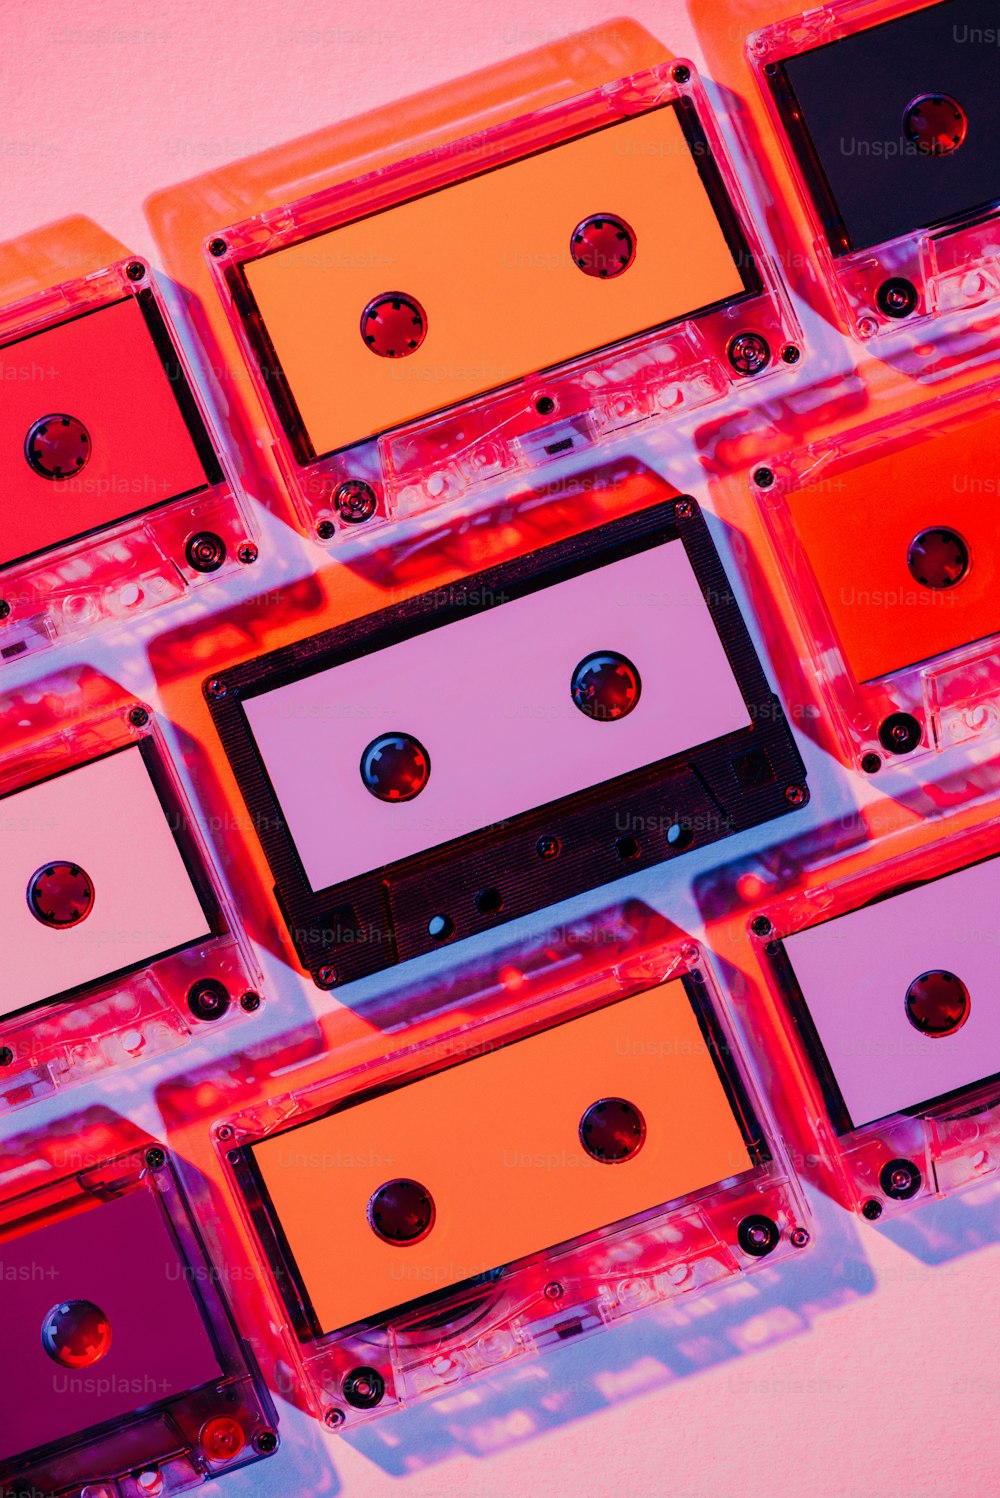 Imagen tonificada de coloridos casetes de audio retro sobre fondo rosa